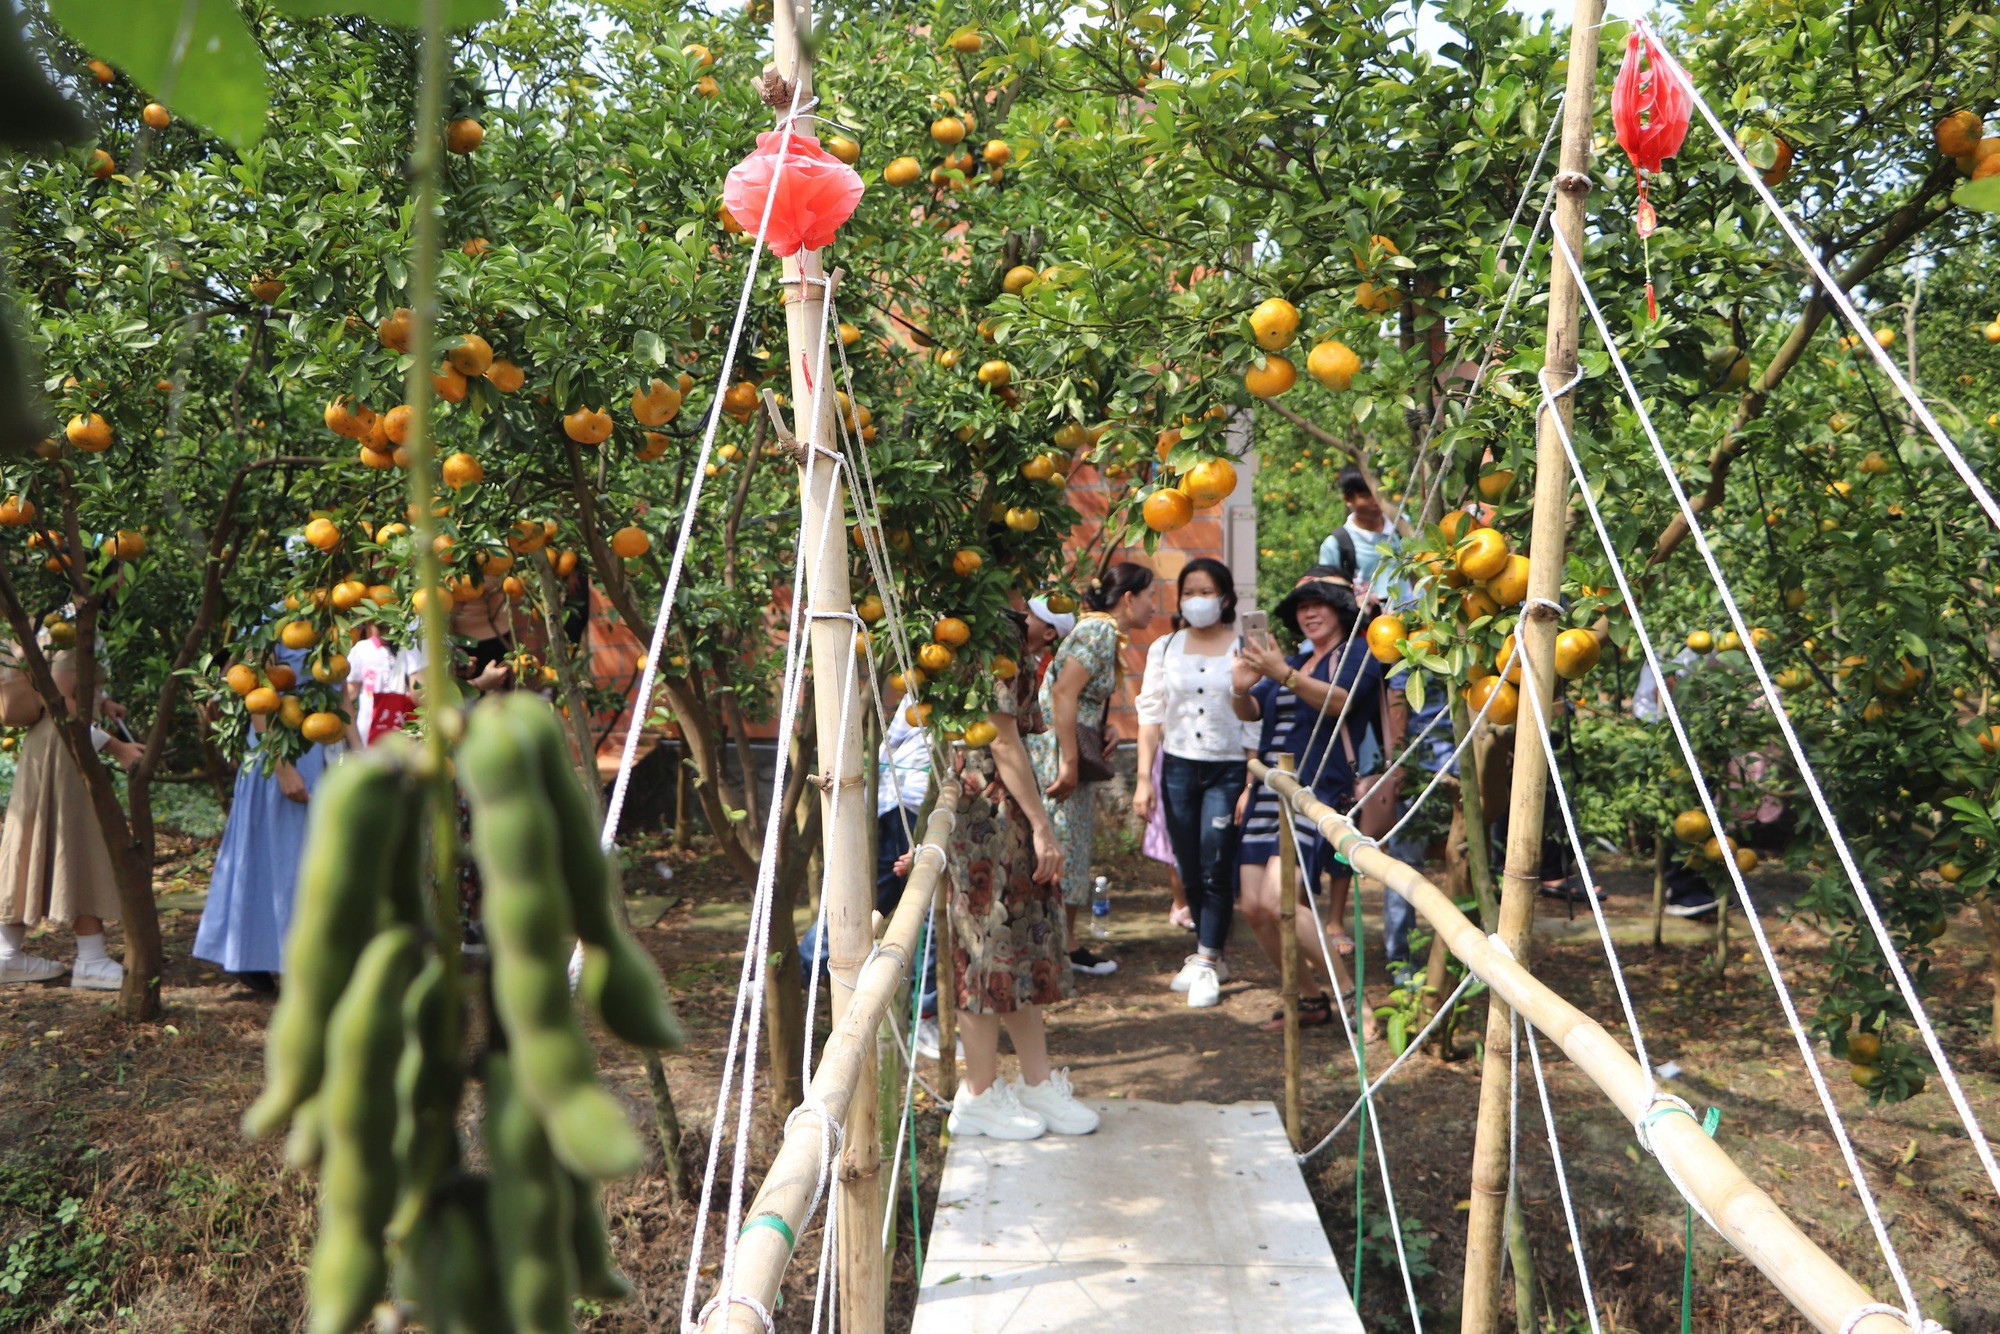 Quýt hồng Lai Vung chín vàng ươm, chủ vườn mở thêm dịch vụ tham quan- Ảnh 4.